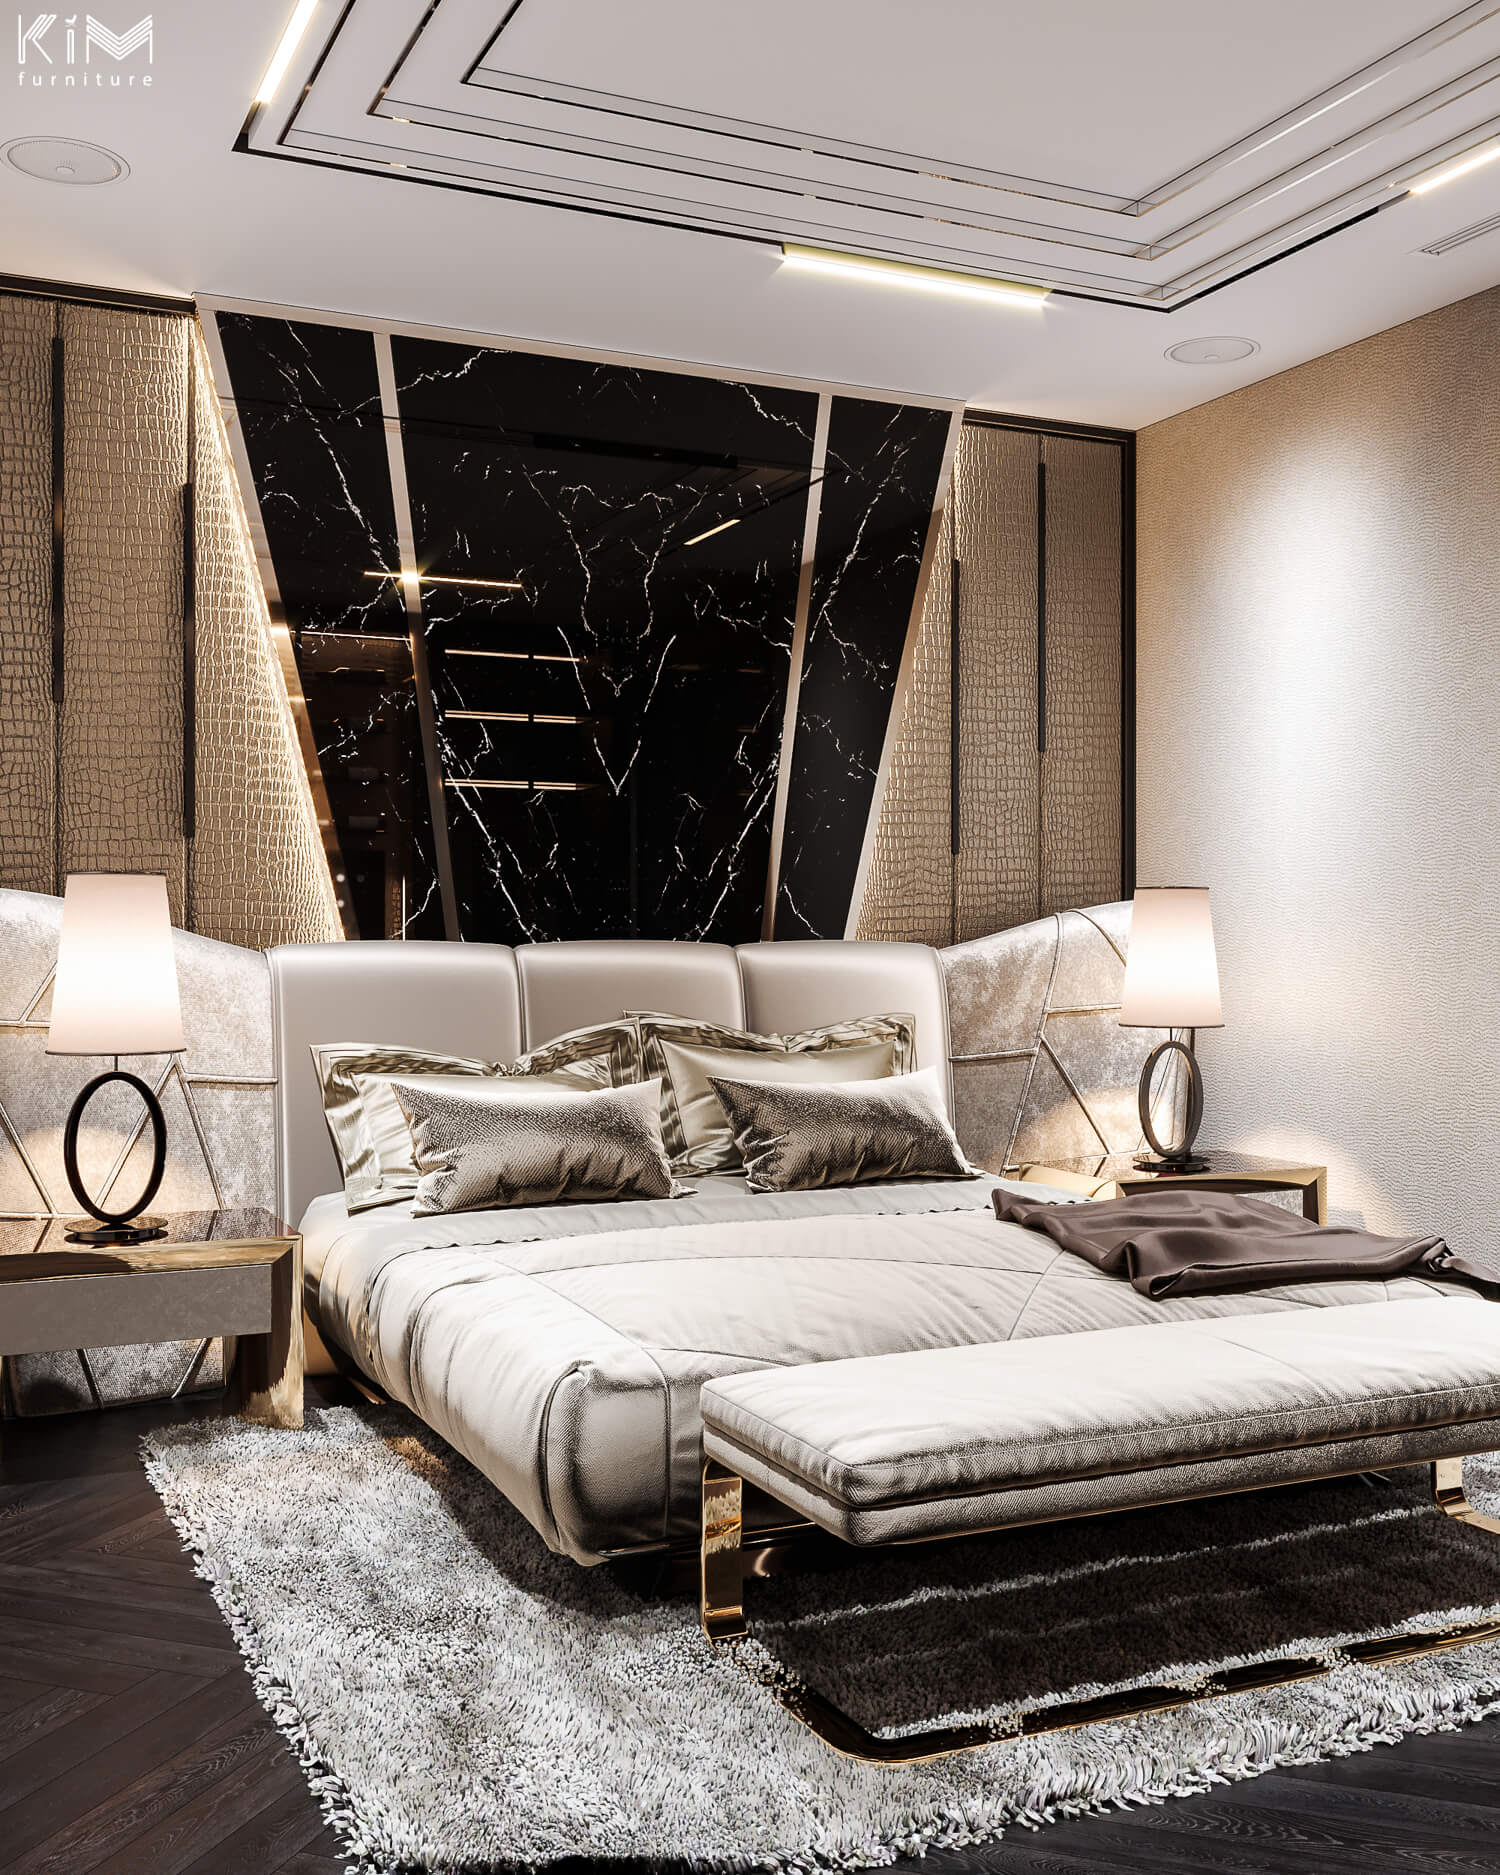 Mẫu phòng ngủ màu đen dự án Penthouse Ancora 1 của KIM furniture